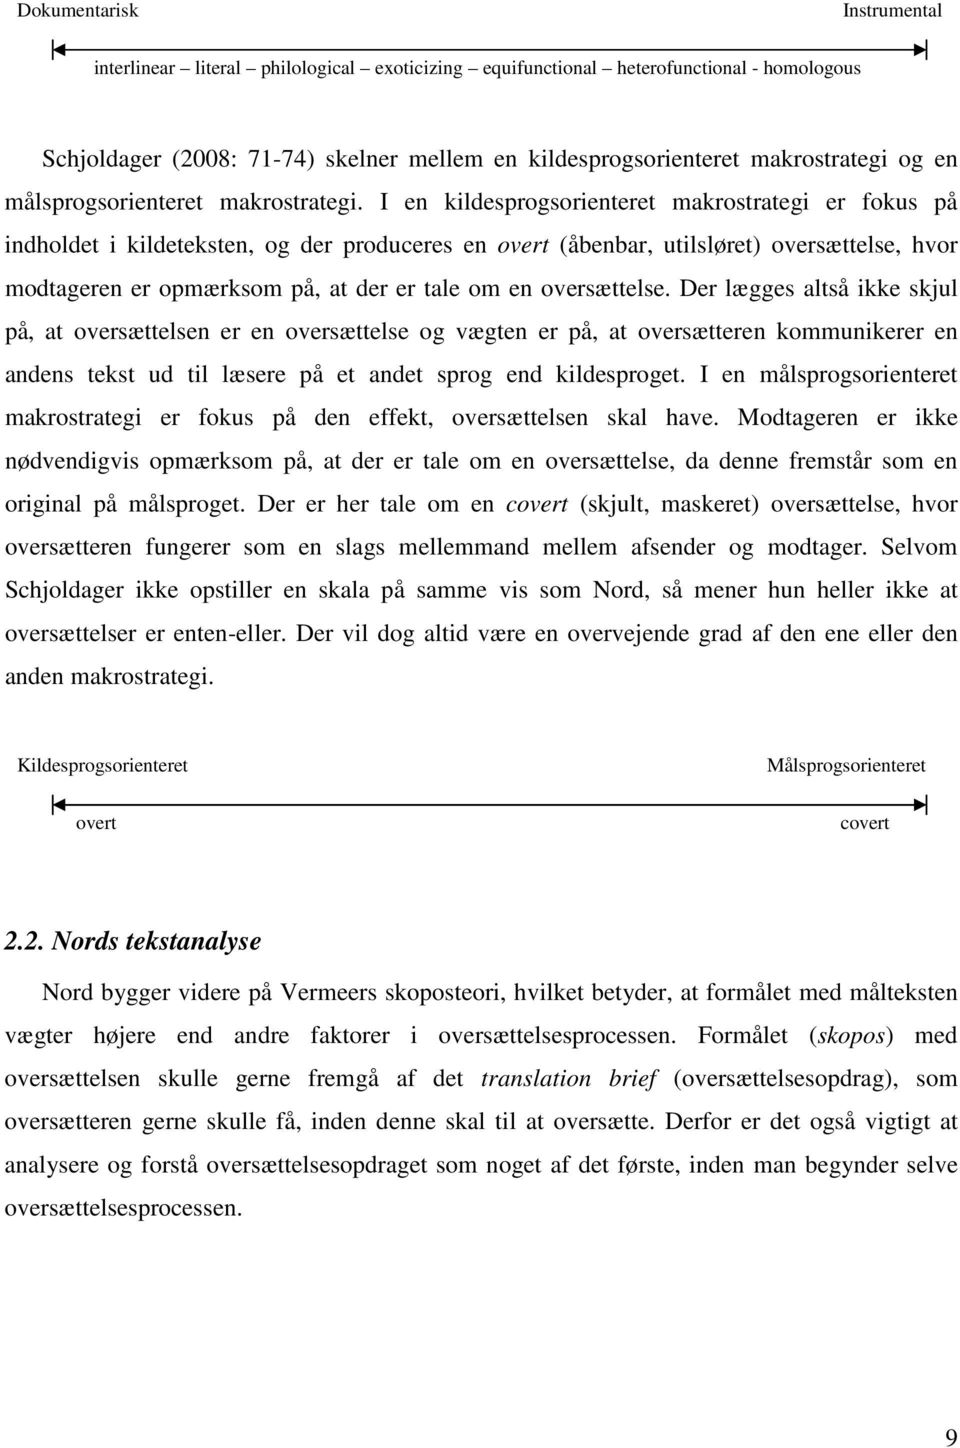 Oversættelse af juridiske tekster med økonomisk indhold - PDF ...